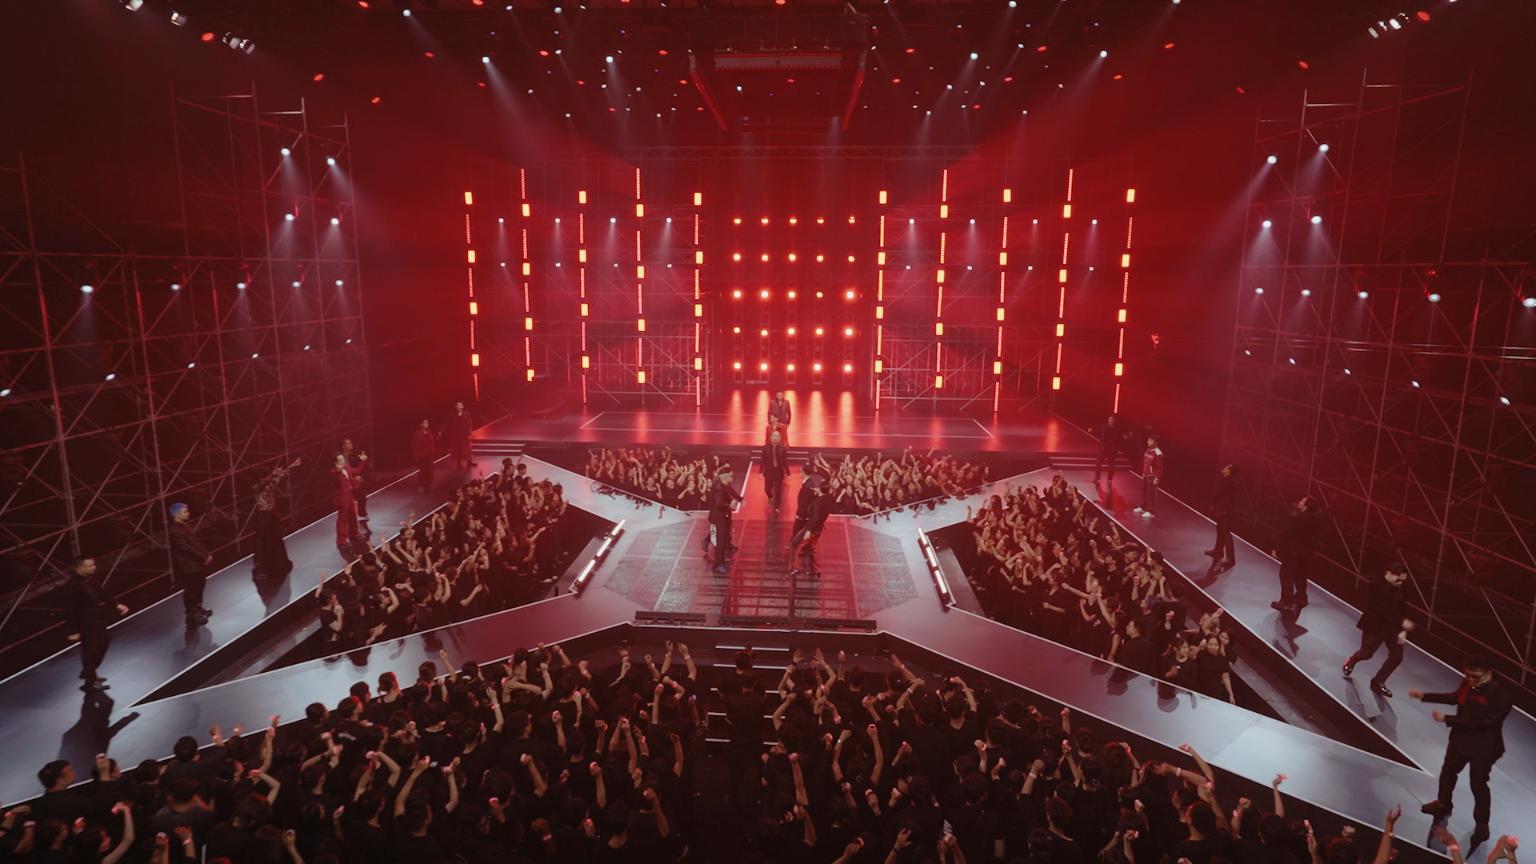 Sân khấu Hoả Ca 1 1 ‘Hoả Ca’ ra mắt bản Live Performance rực lửa’ với đầy đủ 33 Anh Tài trình diễn